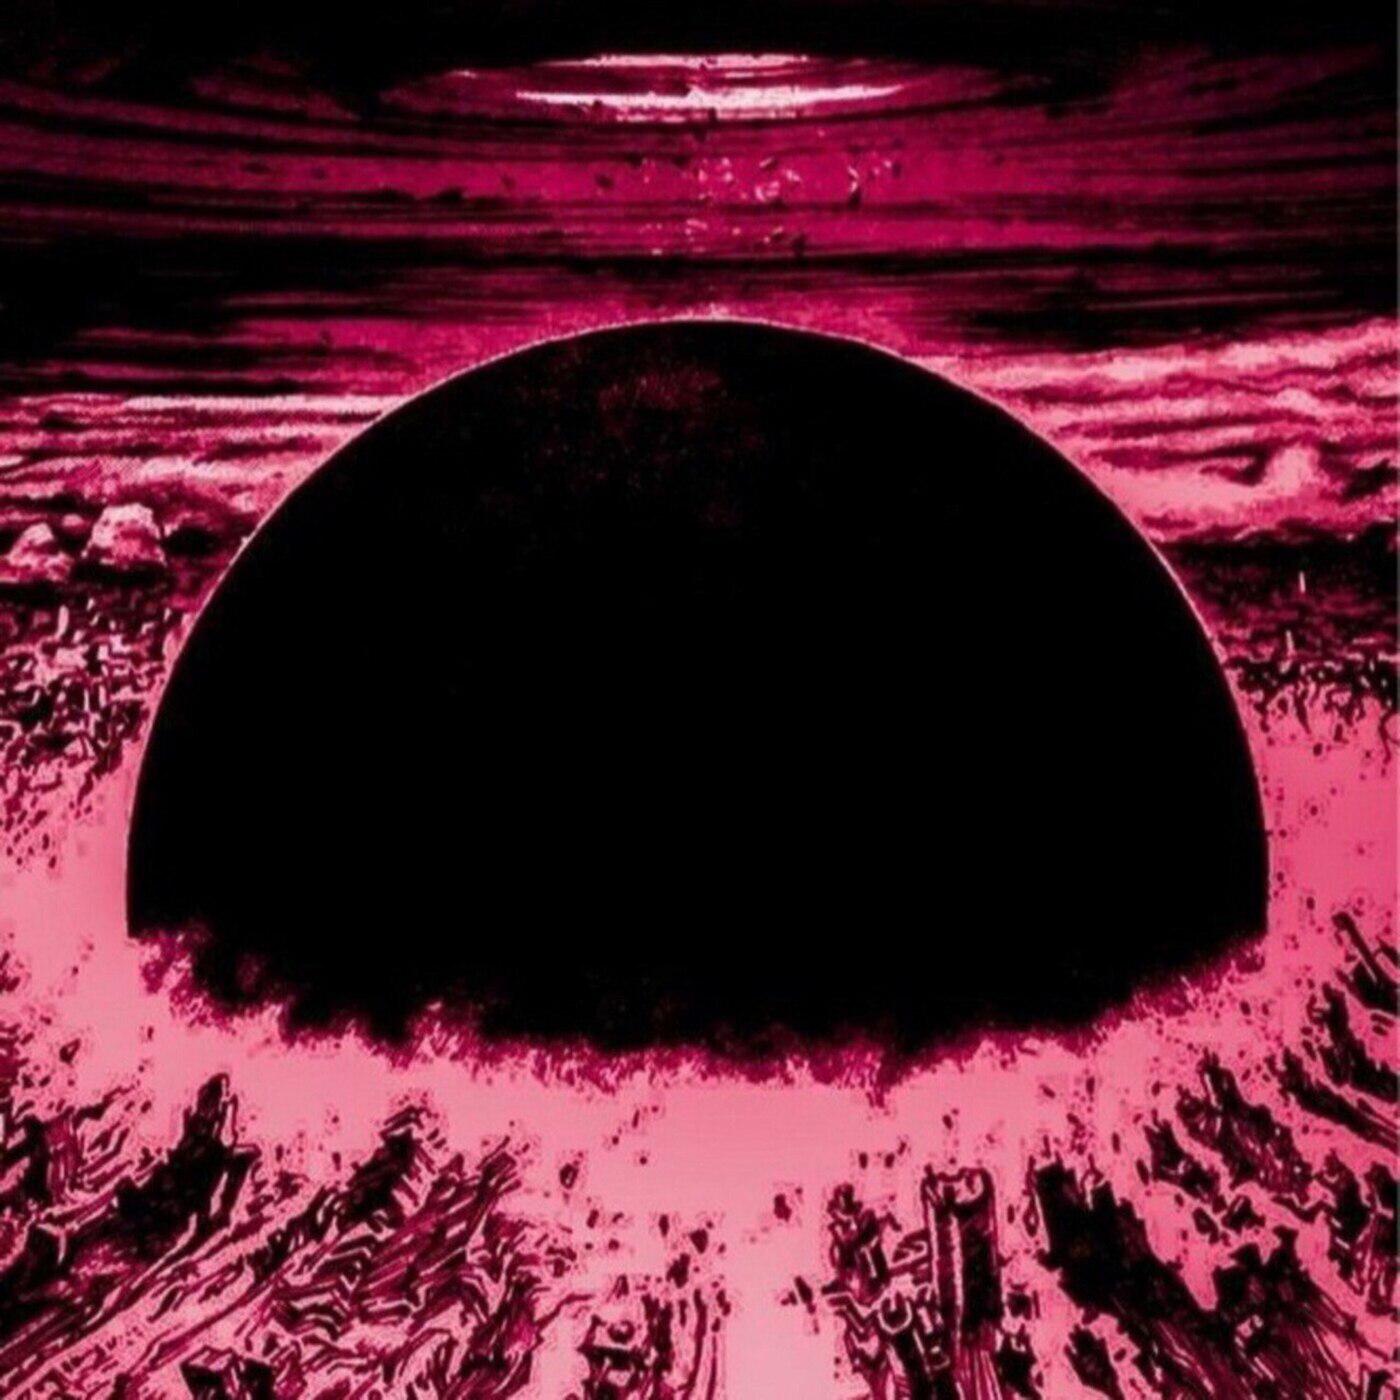 Постер альбома Eclipses